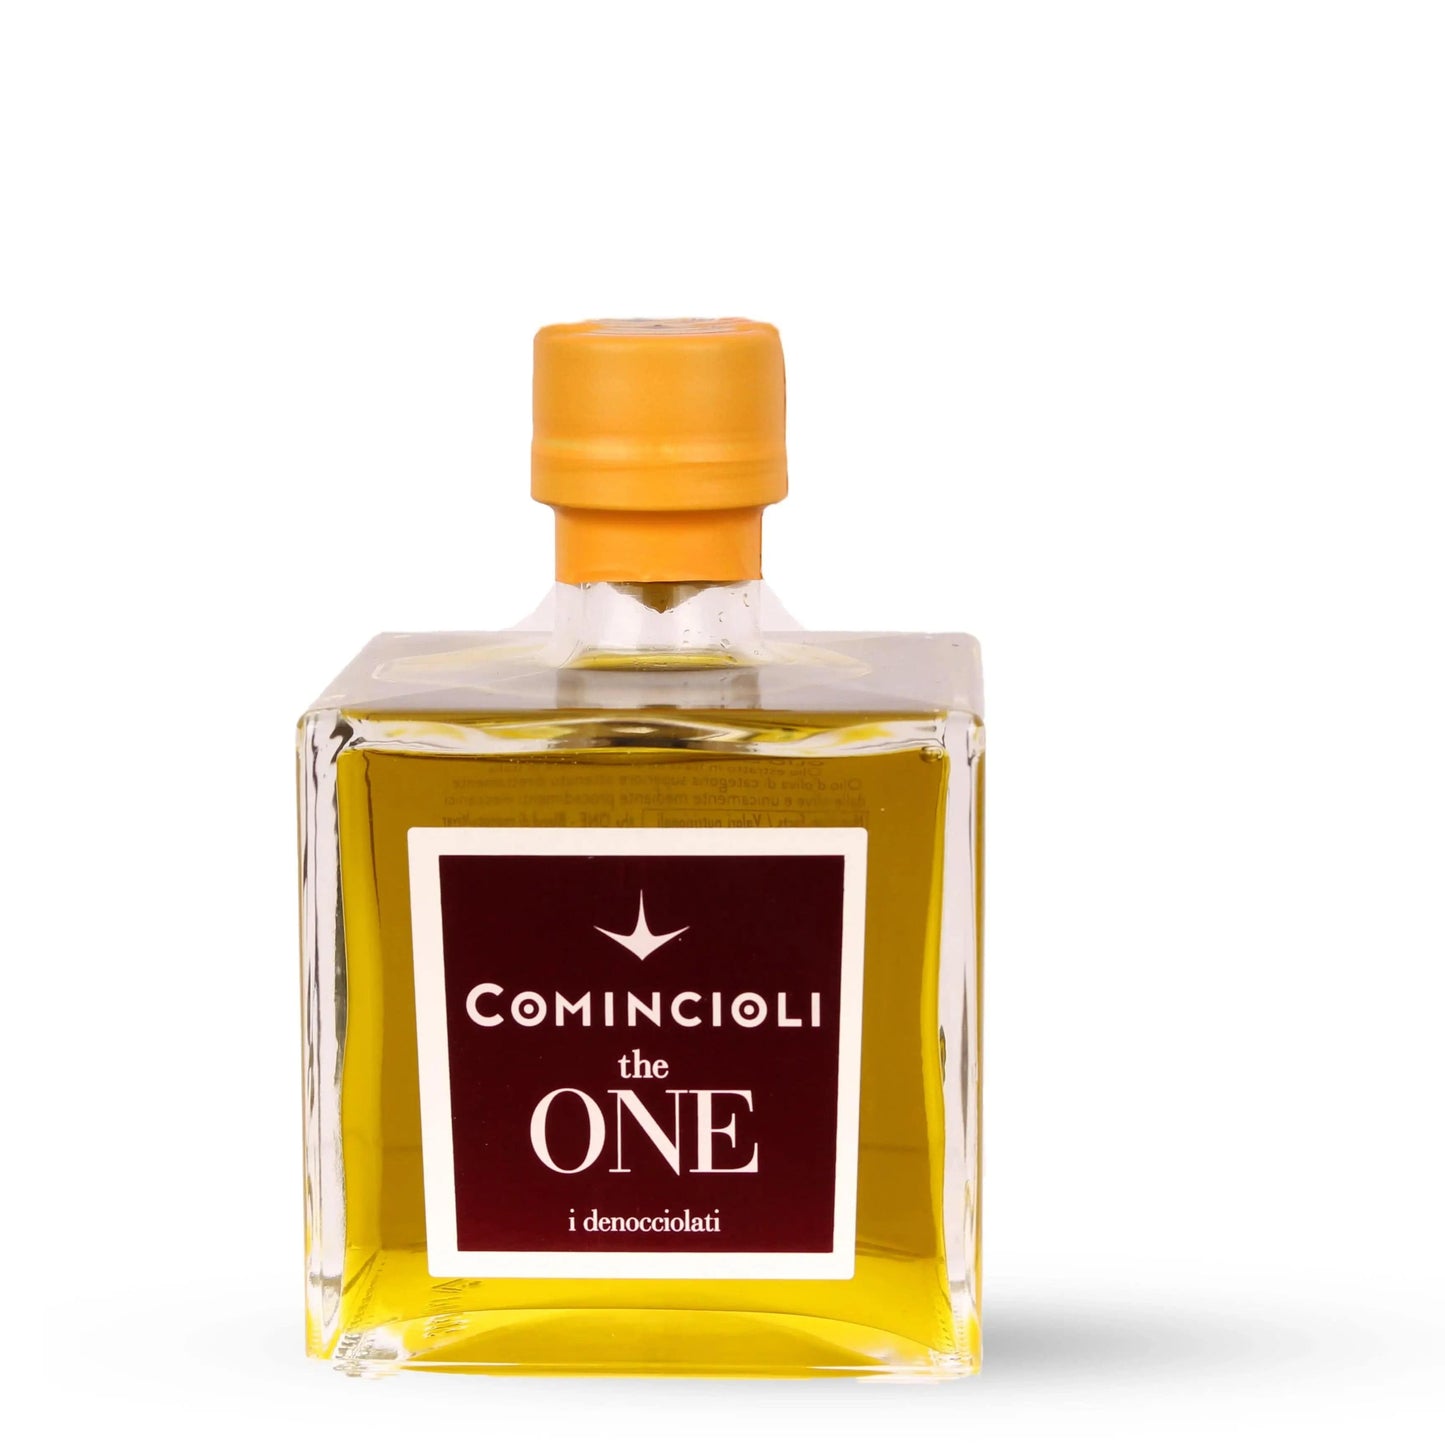 Italiving Olivenöl Comincioli Öl Olio extra vergine - "The One" Abfüllung 3.1.2022 500ml